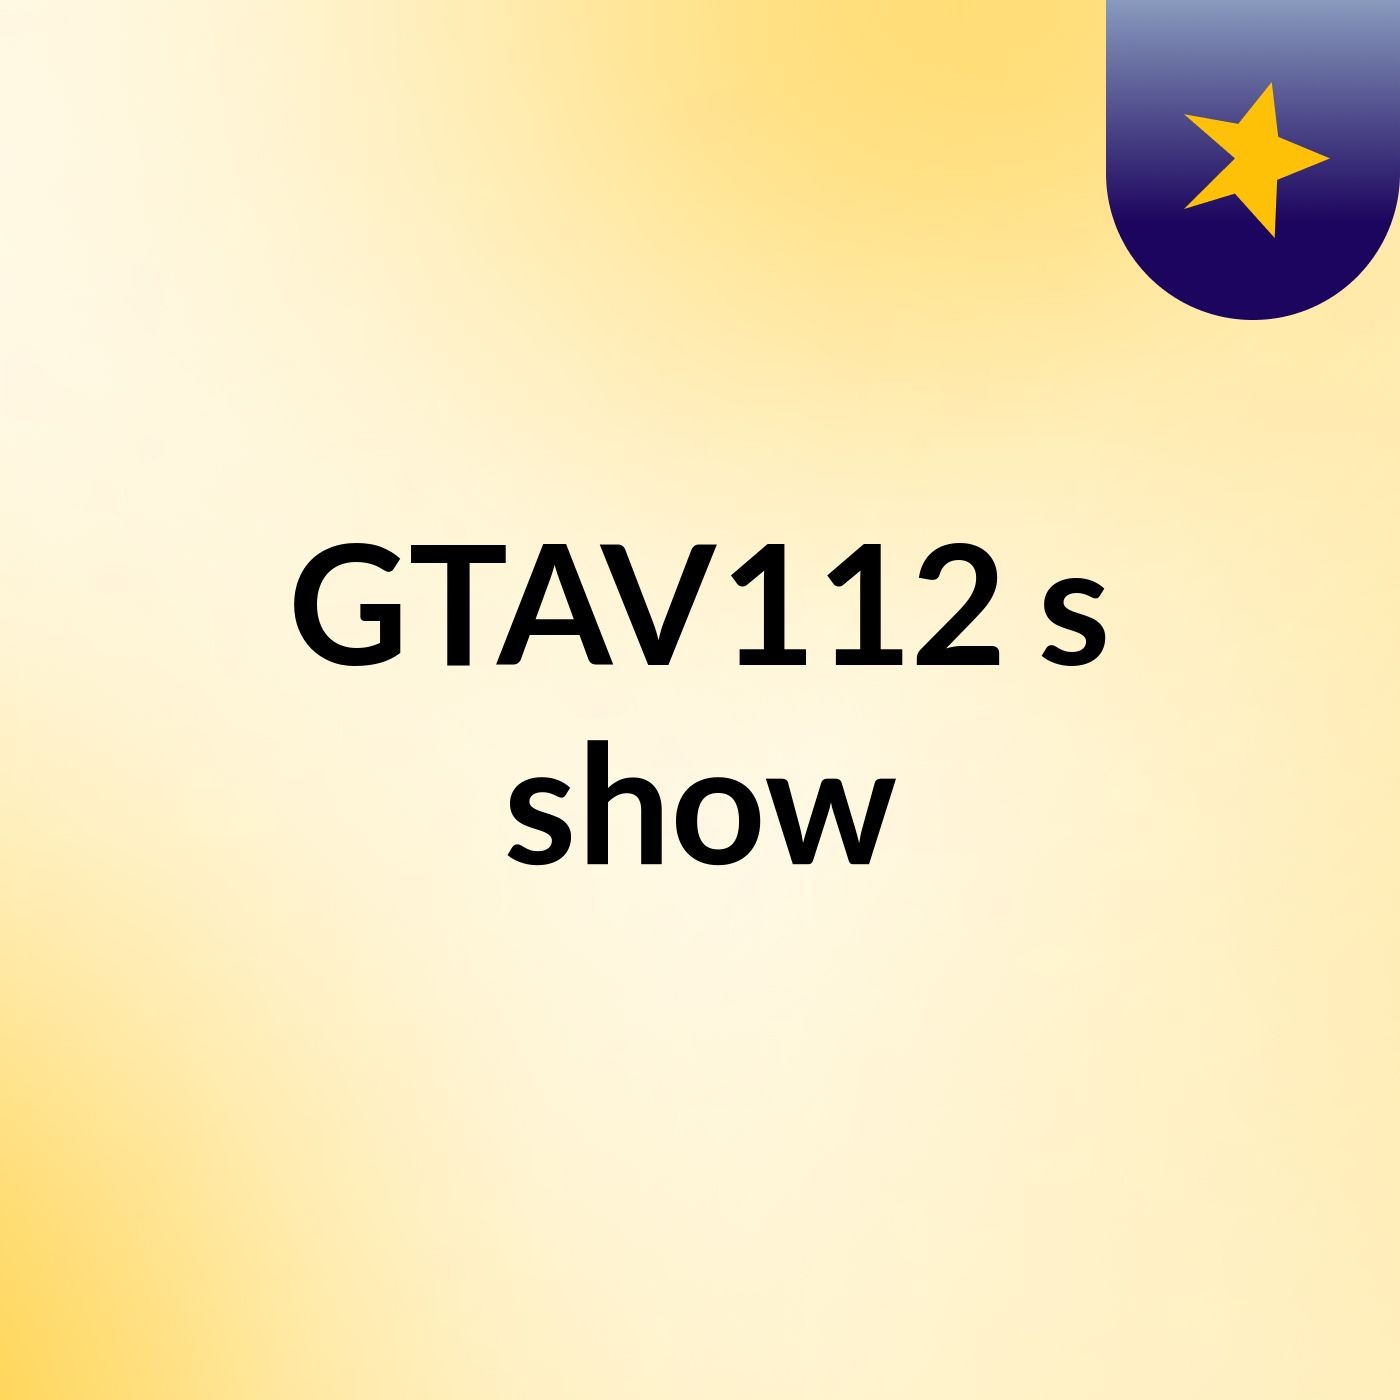 GTAV112's show